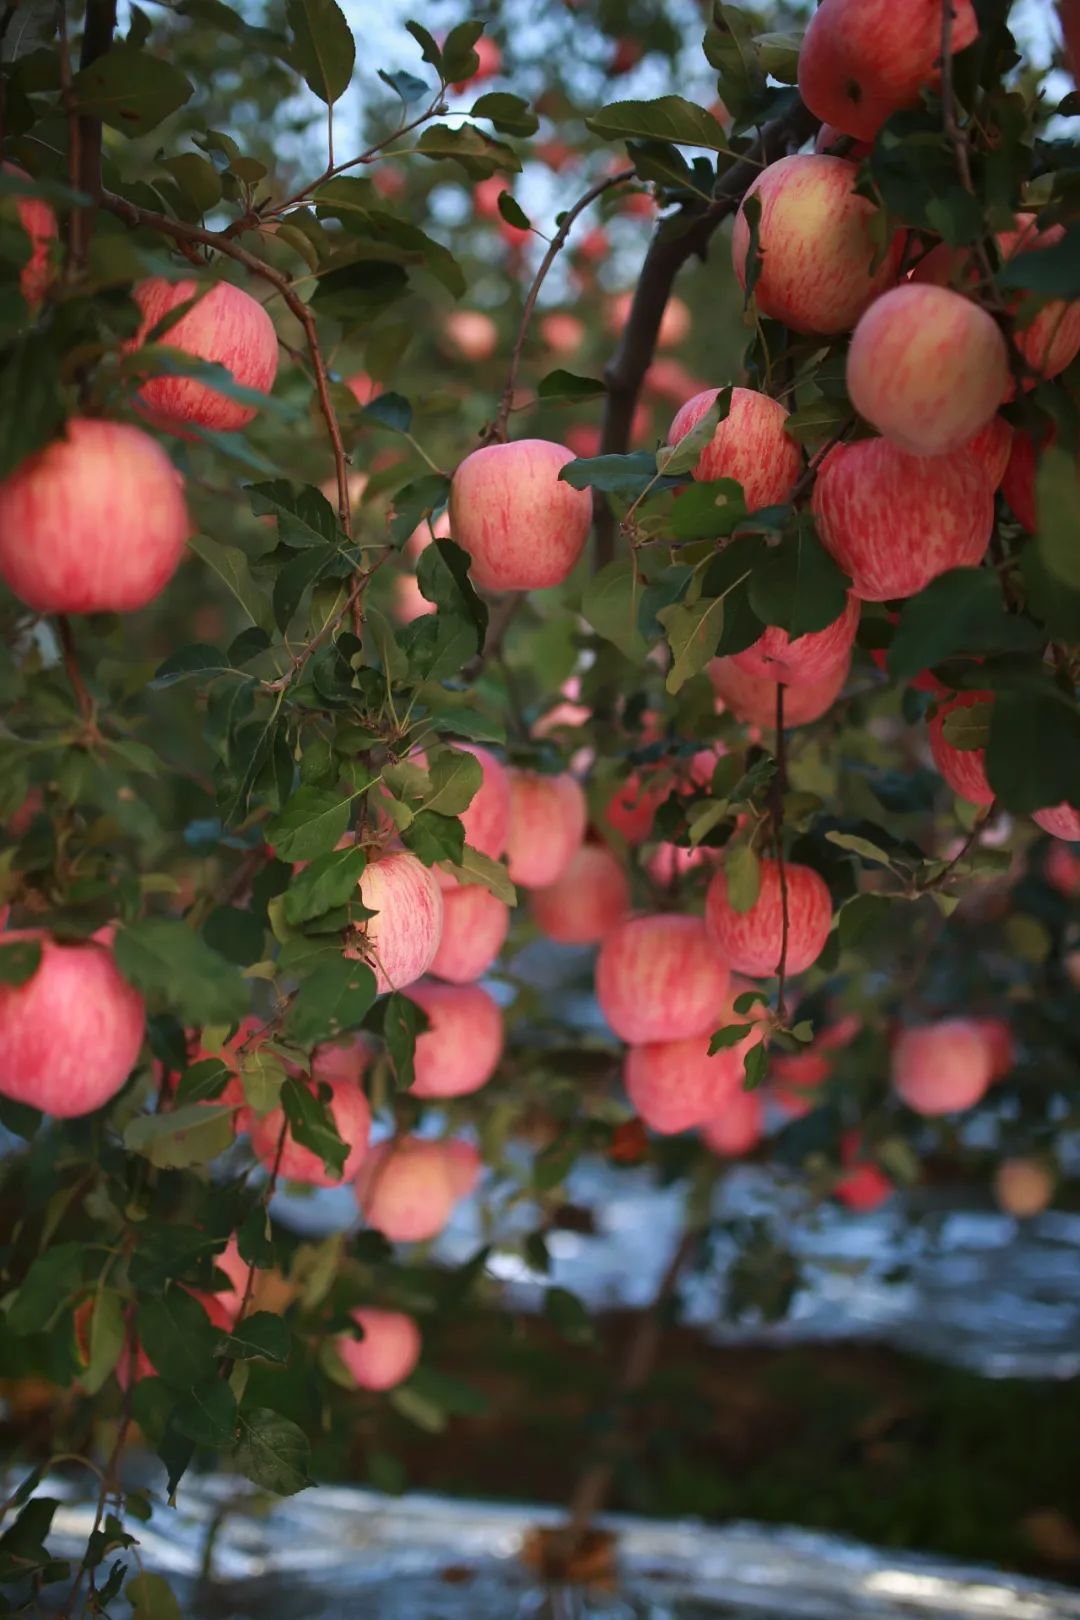 作为烟台苹果的核心区和主产地，栖霞苹果迎来了收获季 ©️醉美山东